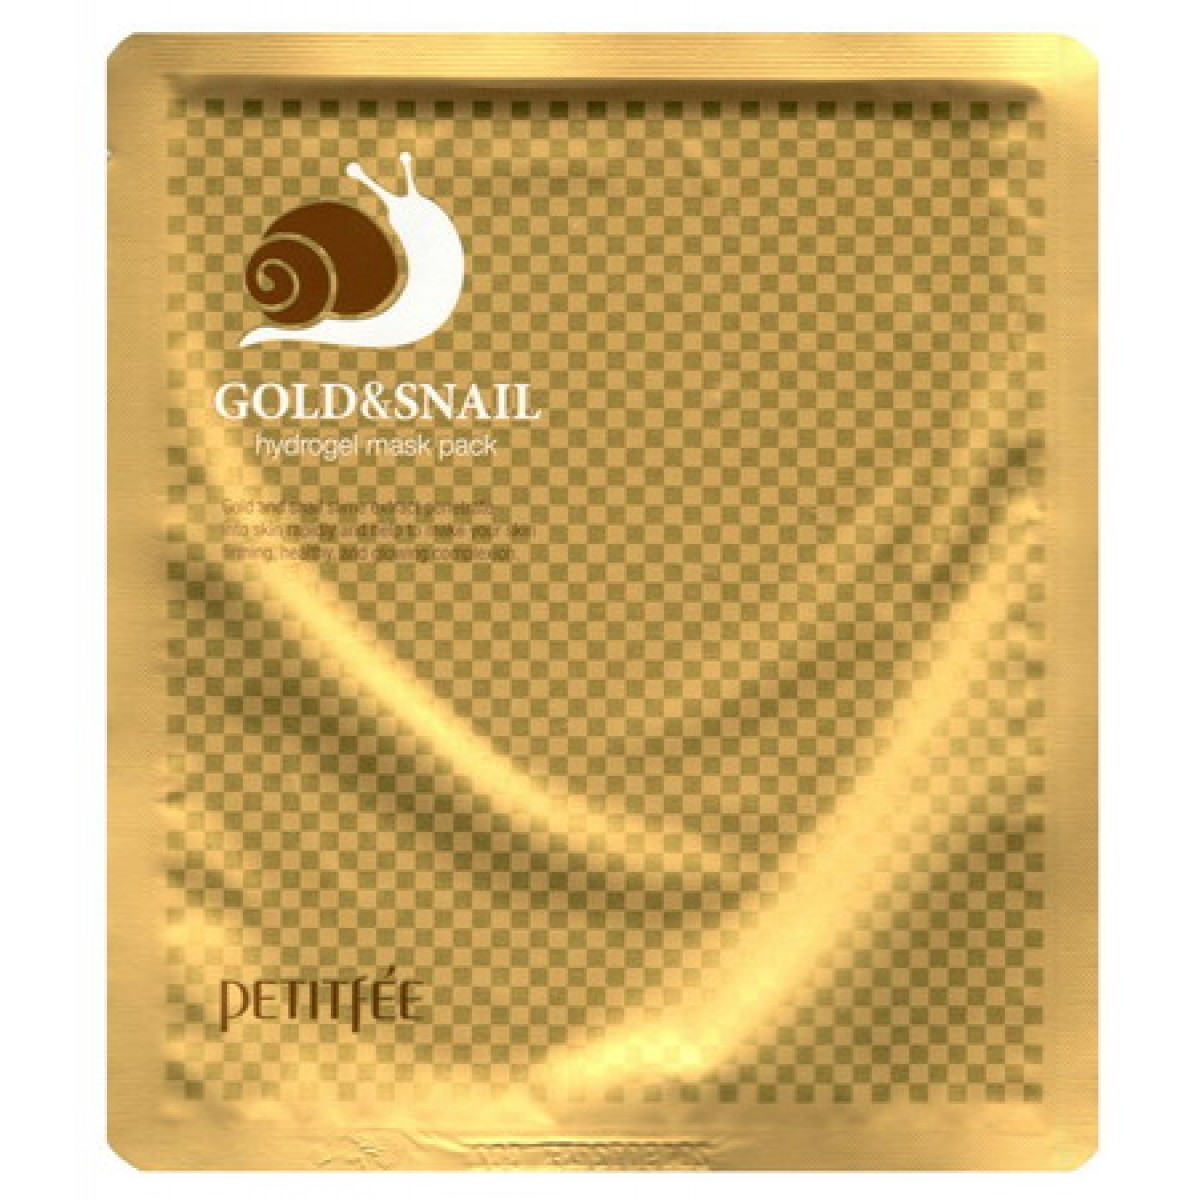 Гидрогелевая маска для лица Petitfee Gold Snail Transparent Gel Mask Pack 3 шт eisenberg крем восстанавливающий укрепляющий с микрочастицами золота для лица и шеи дневной